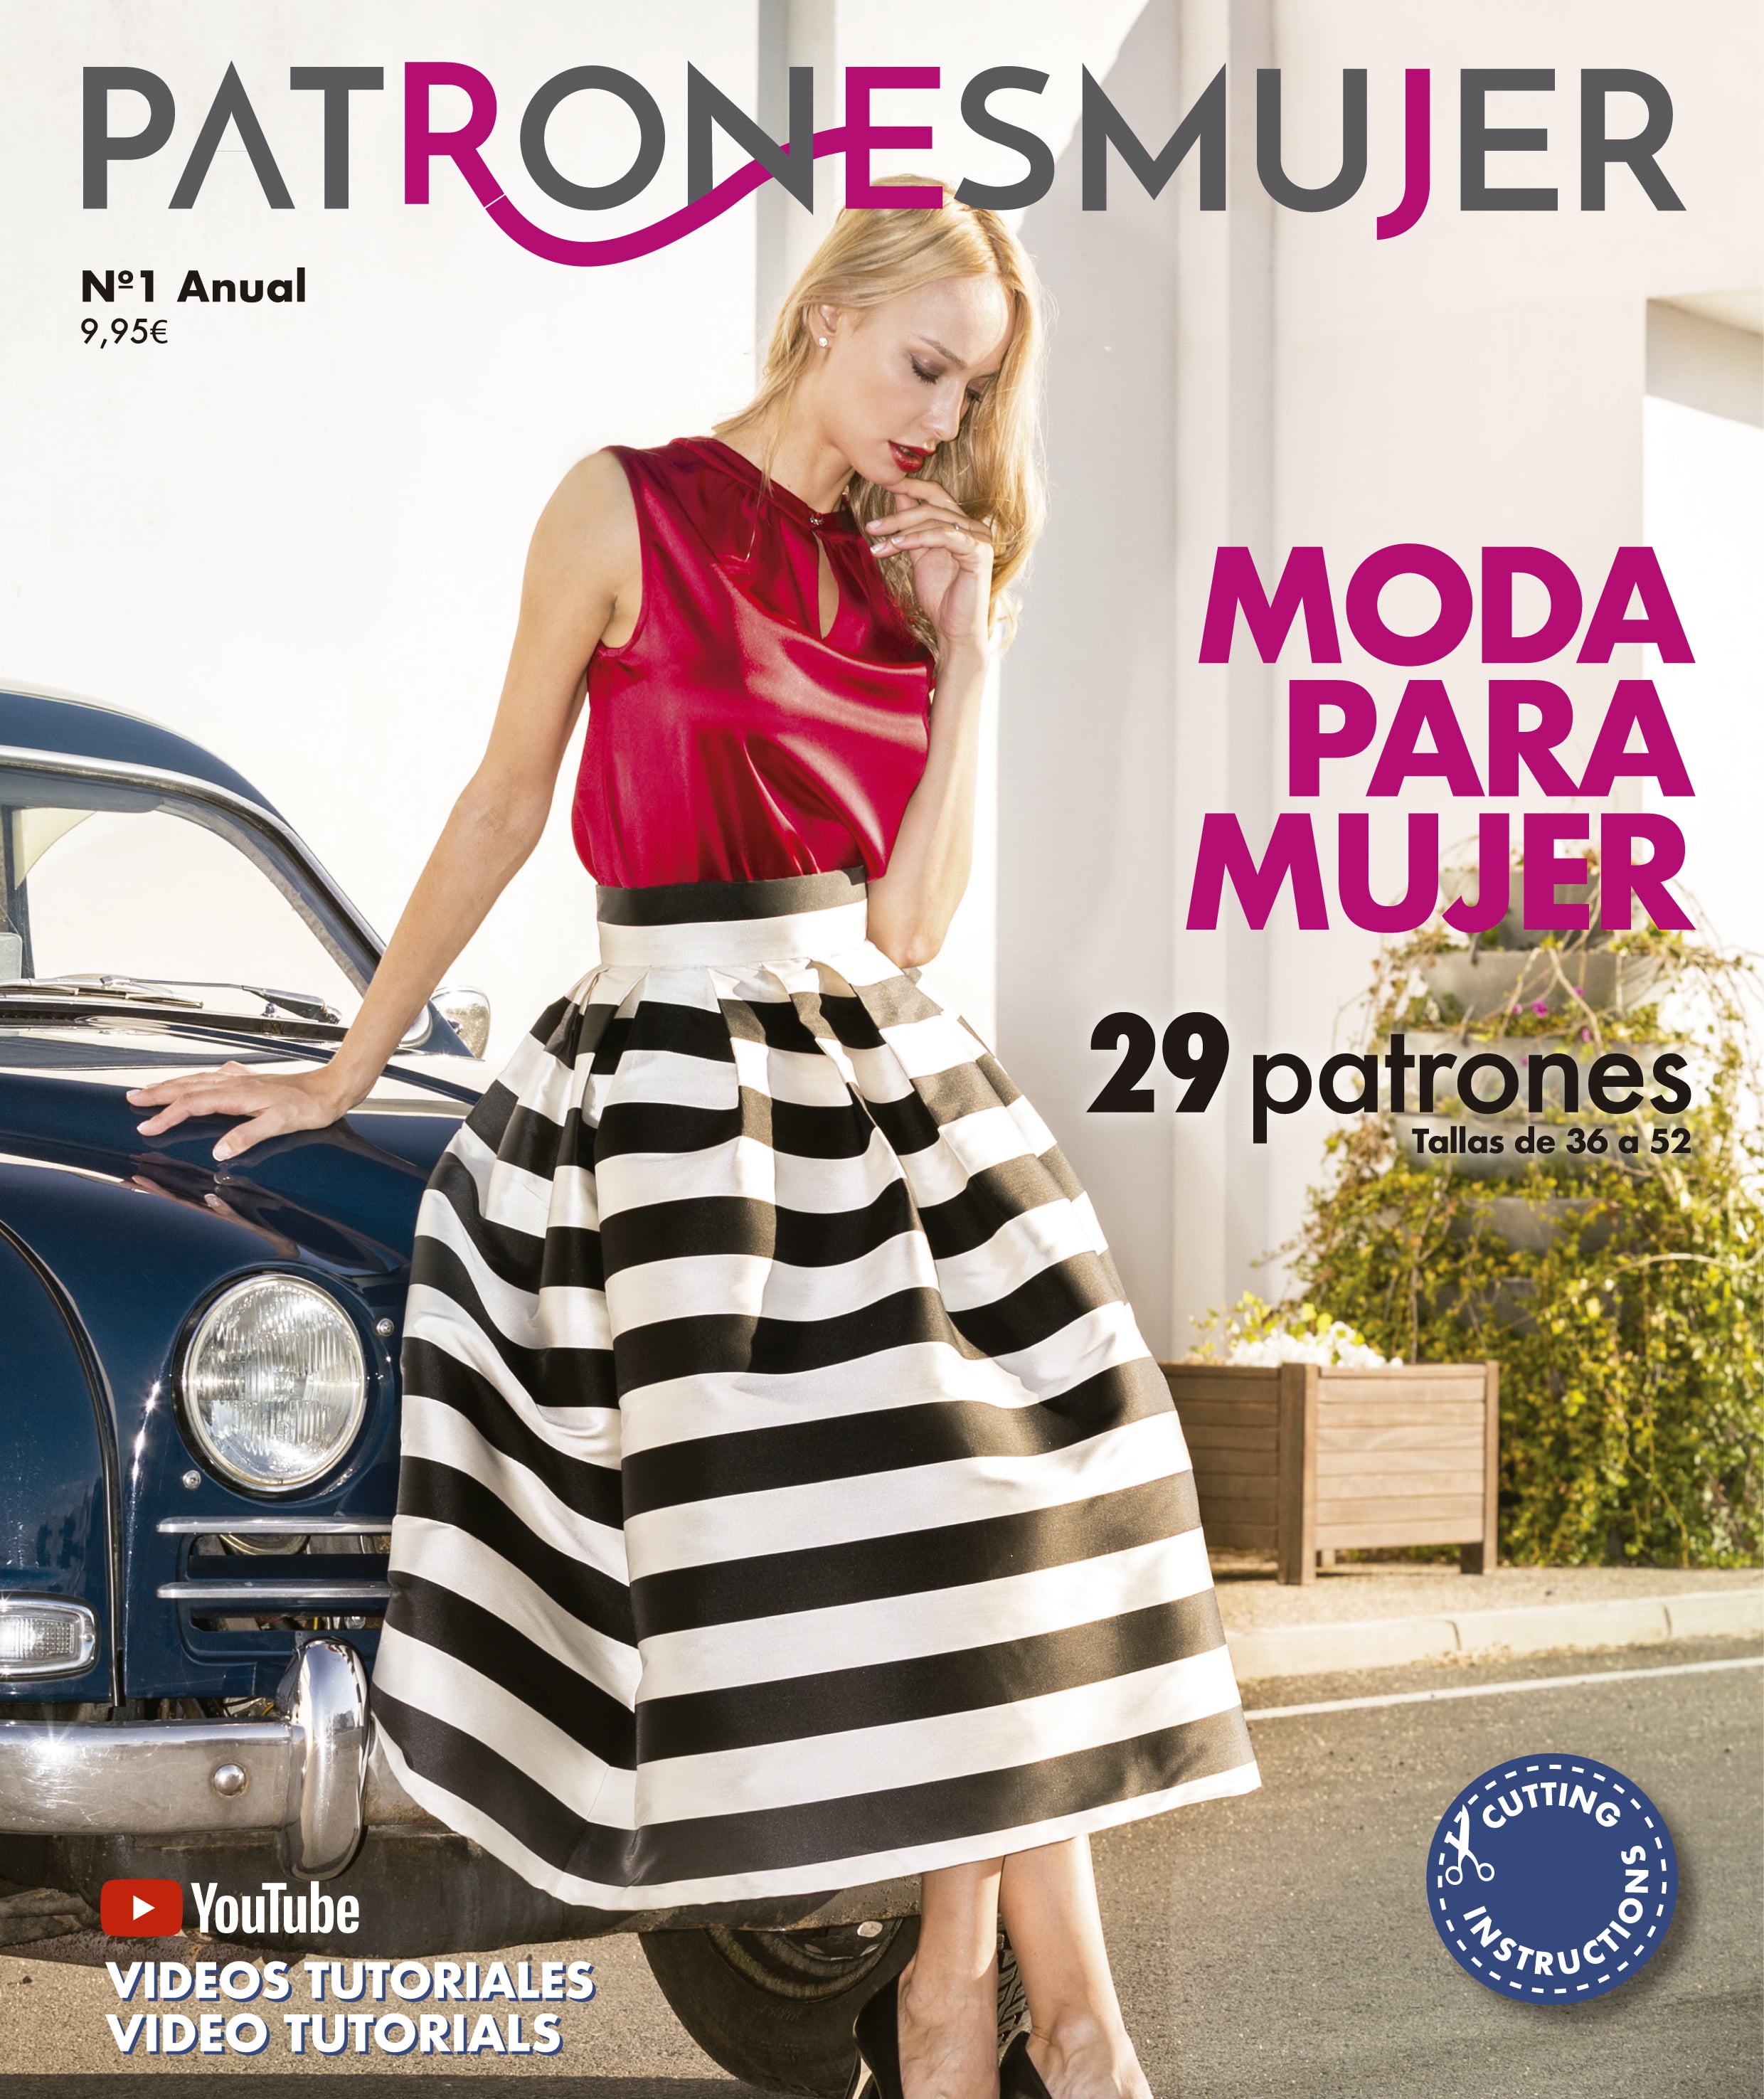 Revista Patrones Mujer 3 - maratelas